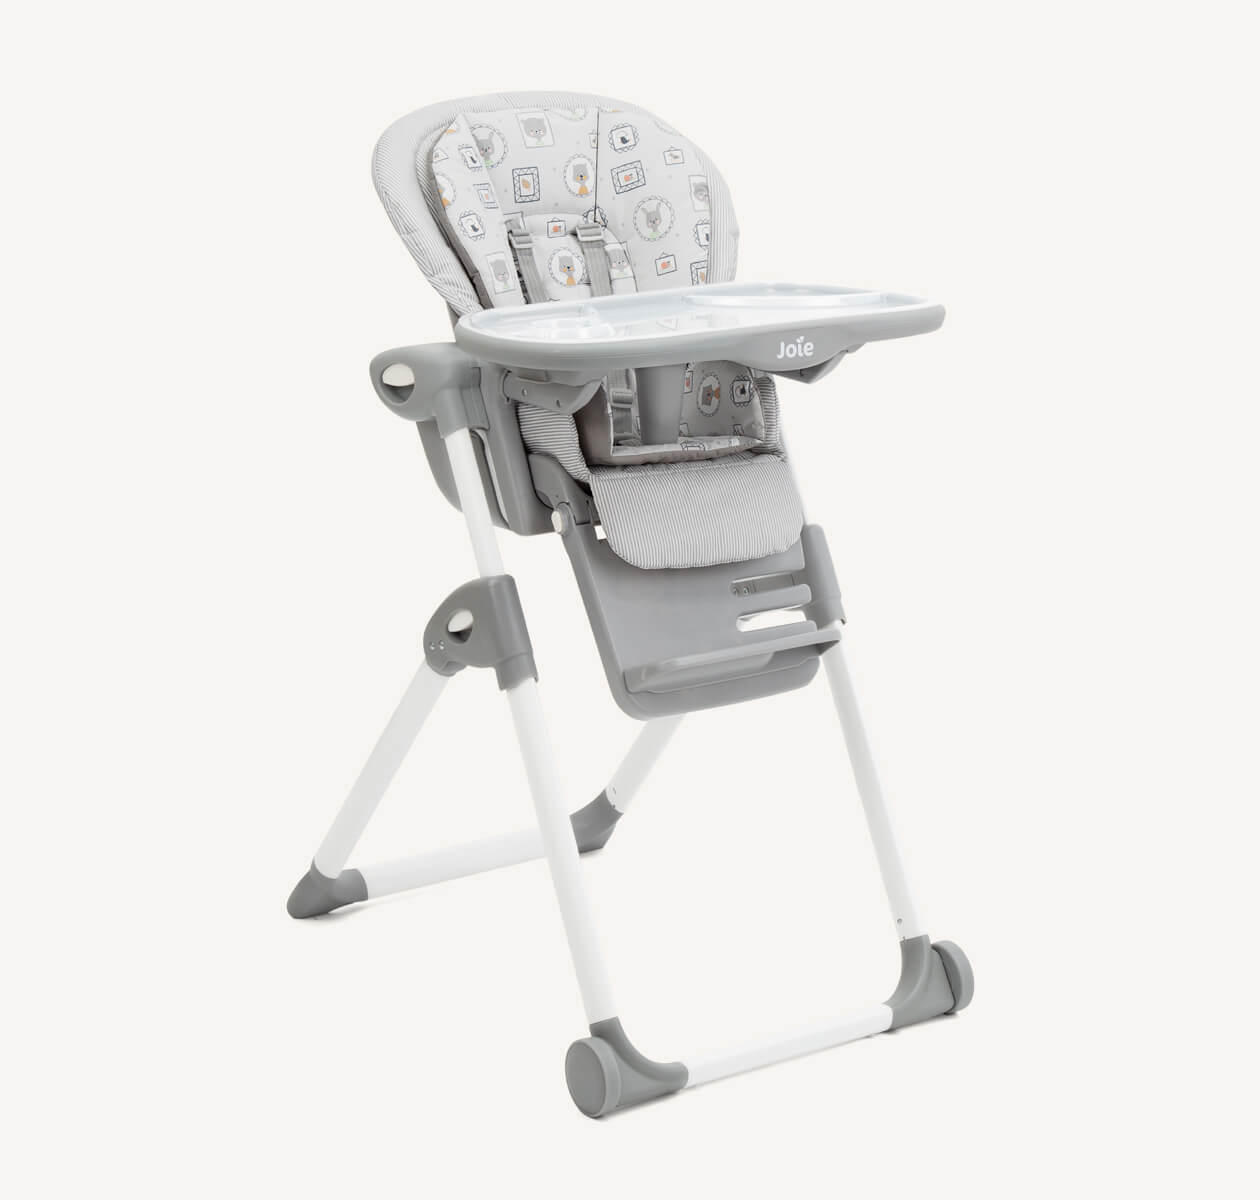 Chaise haute Joie Mimzy Recline utilisable dès la naissance, avec pieds blancs et gris, assise grise et insert gris à motifs représentant des portraits d’animaux, orientée vers la droite et vue en angle.